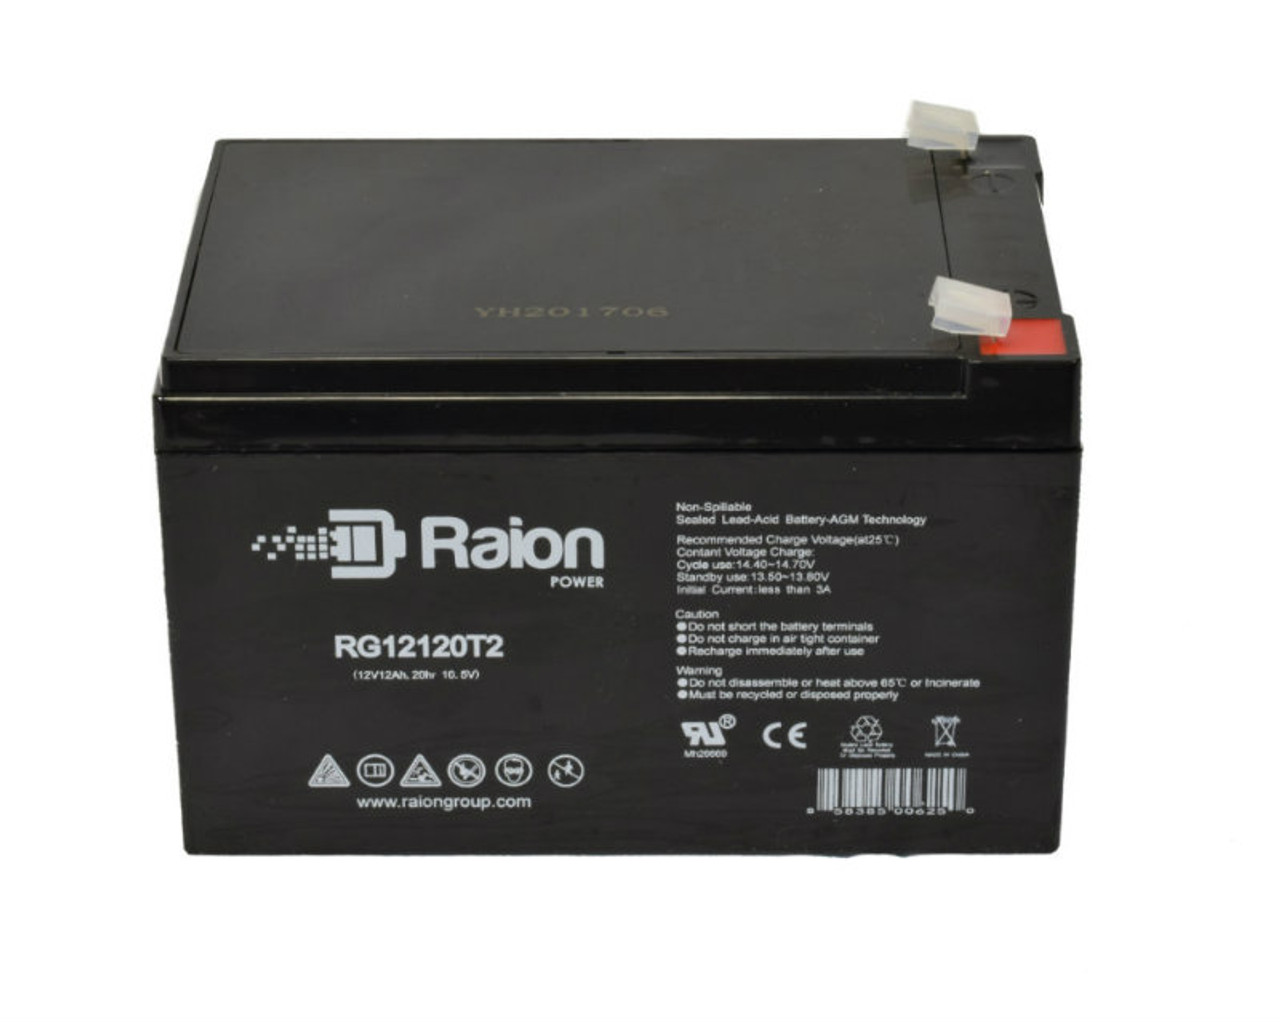 Raion Power RG12120T2 SLA Battery for Altronix SMP10PM24P4CB